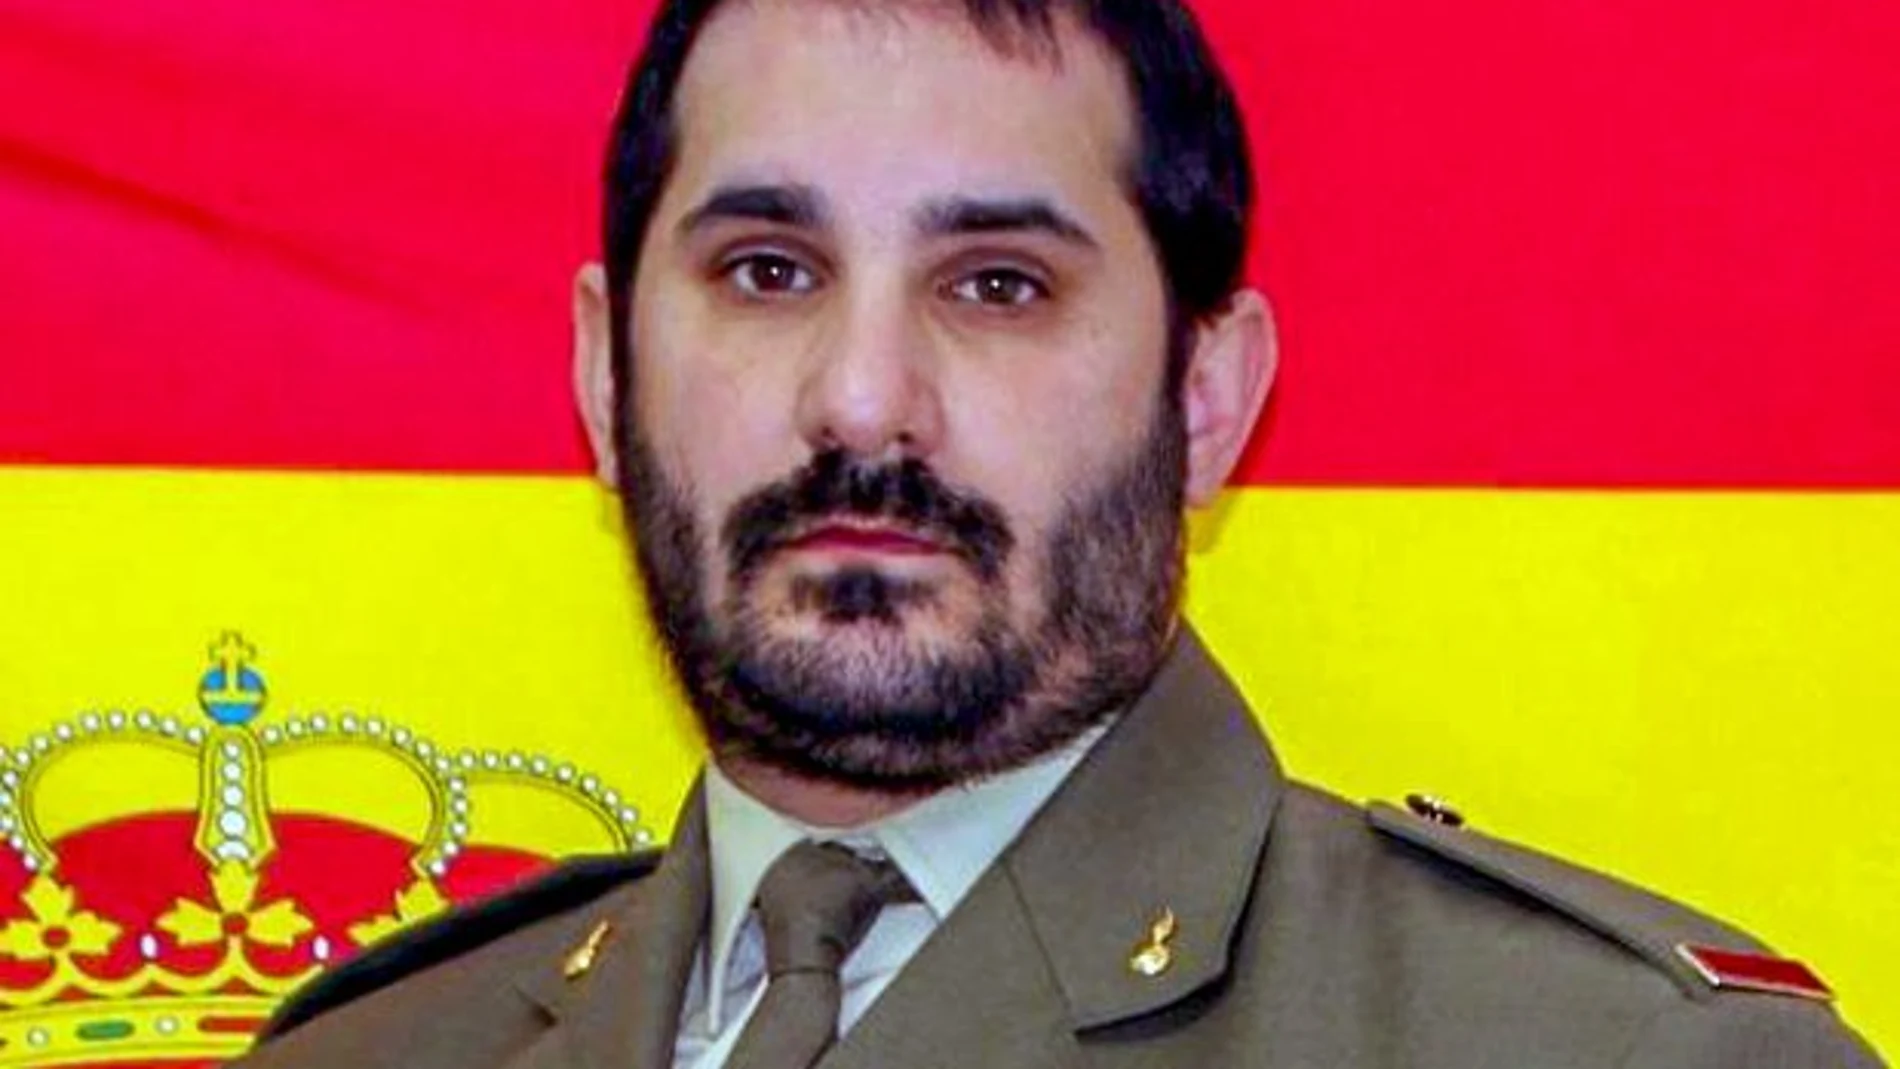 El soldado Iván Mejuto Rodríguez, fallecido en el accidente de tráfico